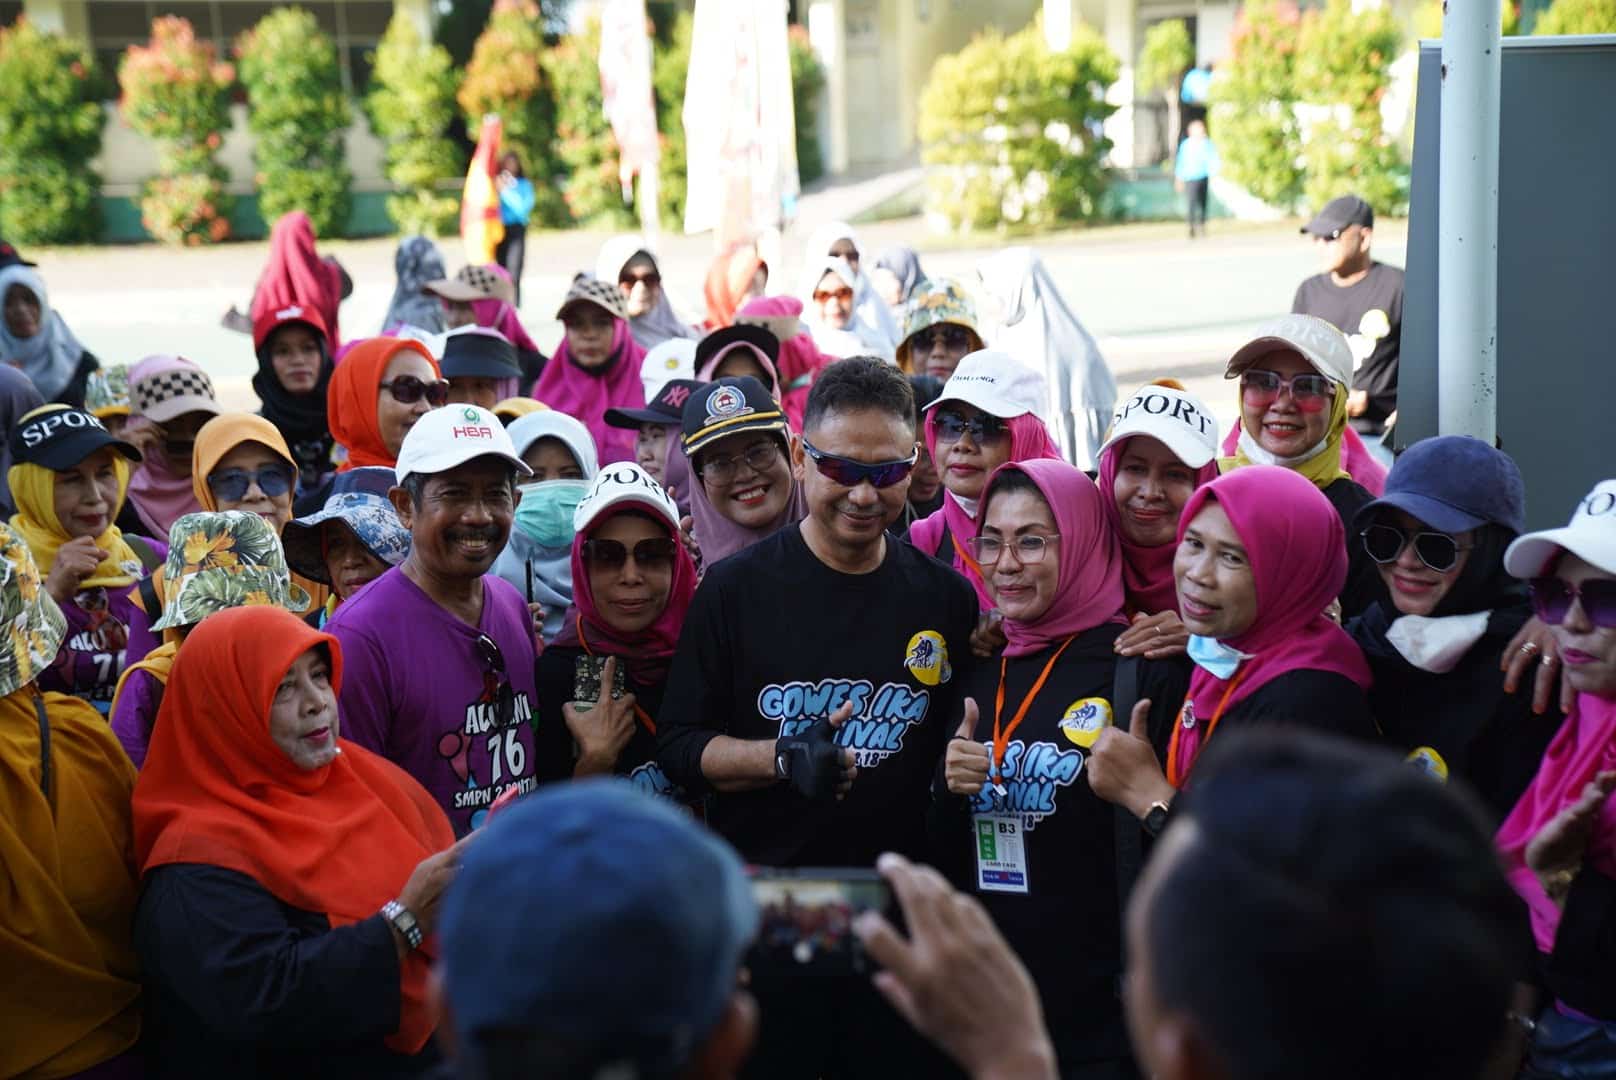 Wali Kota Pontianak, Edi Rusdi Kamtono berfoto bersama para alumni SMPN 2 peserta gowes. (Foto: Prokopim For KalbarOnline.com)